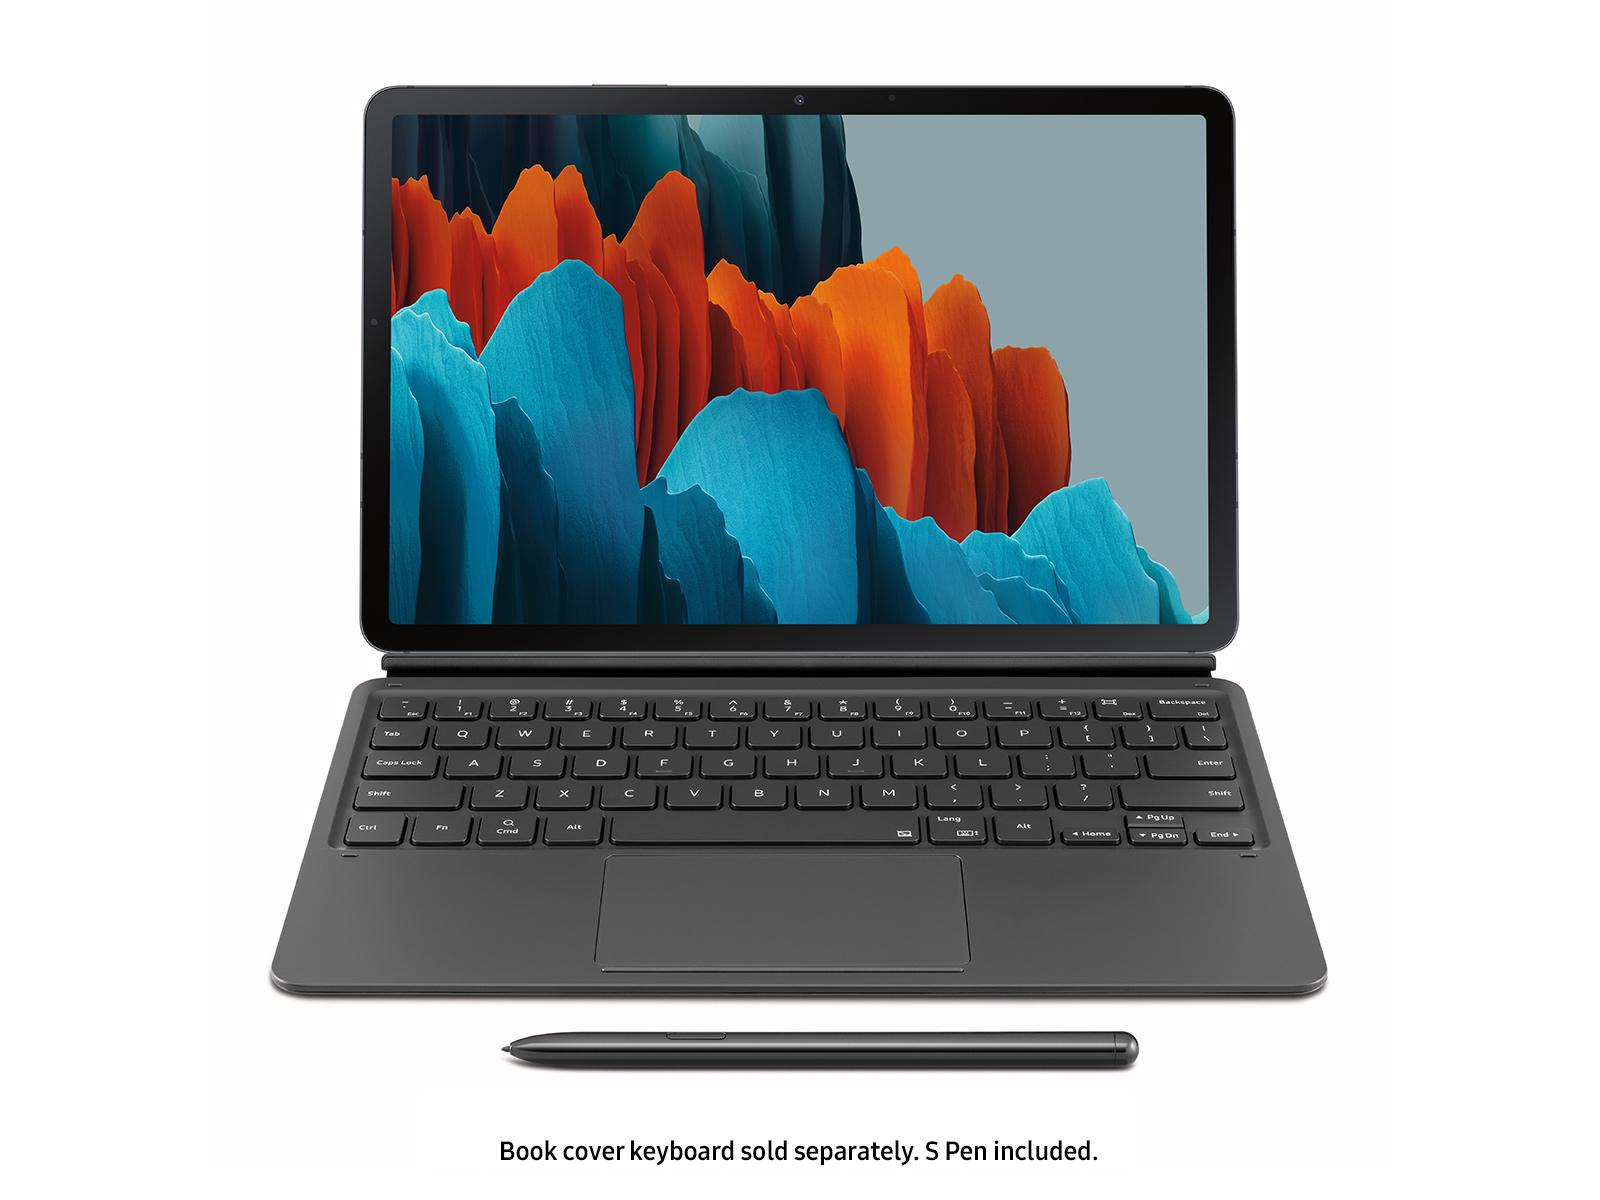 Empleado Aliviar Una vez más Galaxy Tab S7, 128GB, Mystic Black Tablets - SM-T870NZKAXAR | Samsung US